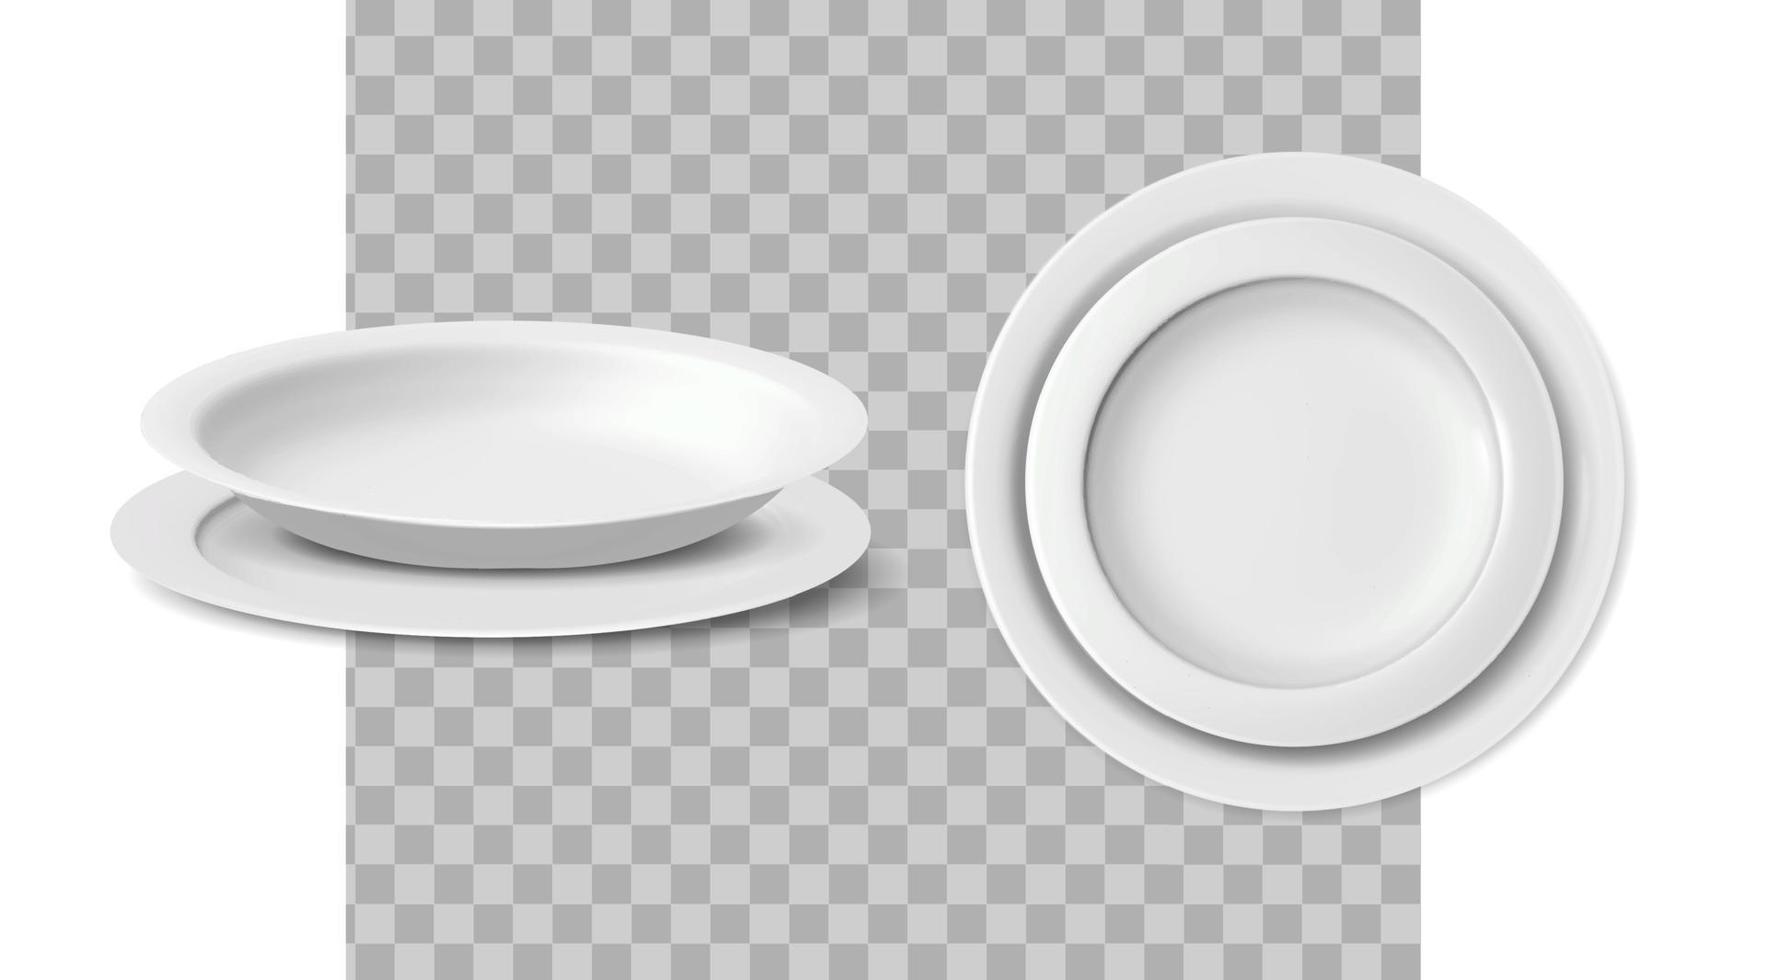 Icono de vector realista 3d. juego de platos de vajilla. vista frontal y lateral.